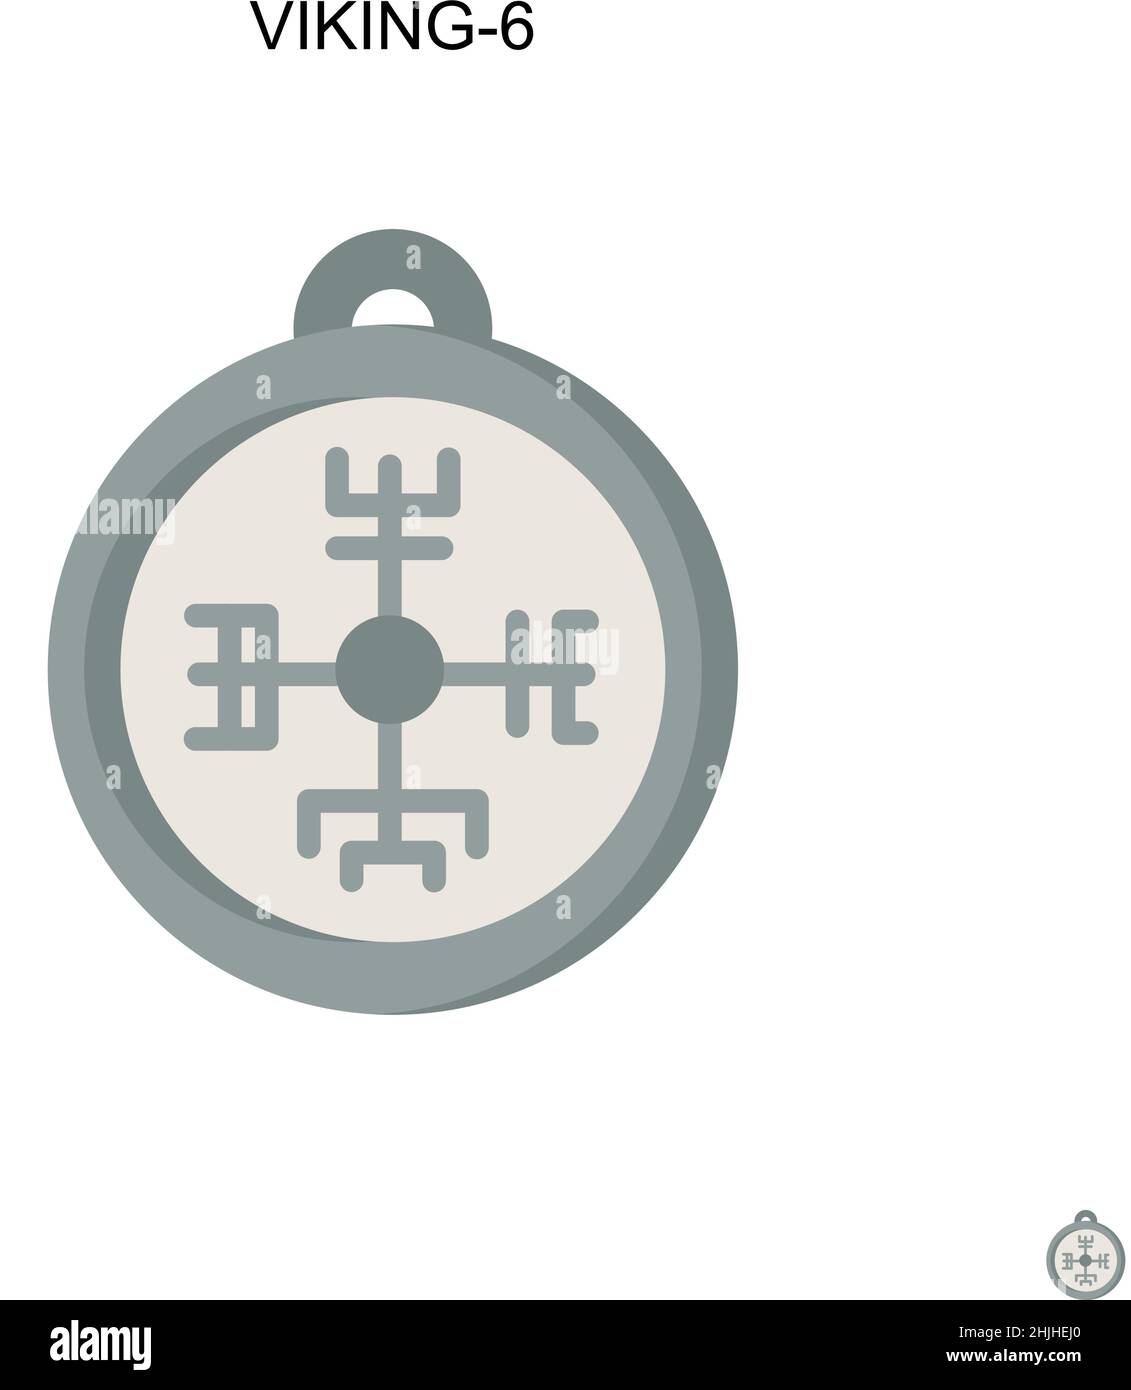 Icône de vecteur simple Viking-6.Modèle de conception de symbole d'illustration pour élément d'interface utilisateur Web mobile. Illustration de Vecteur